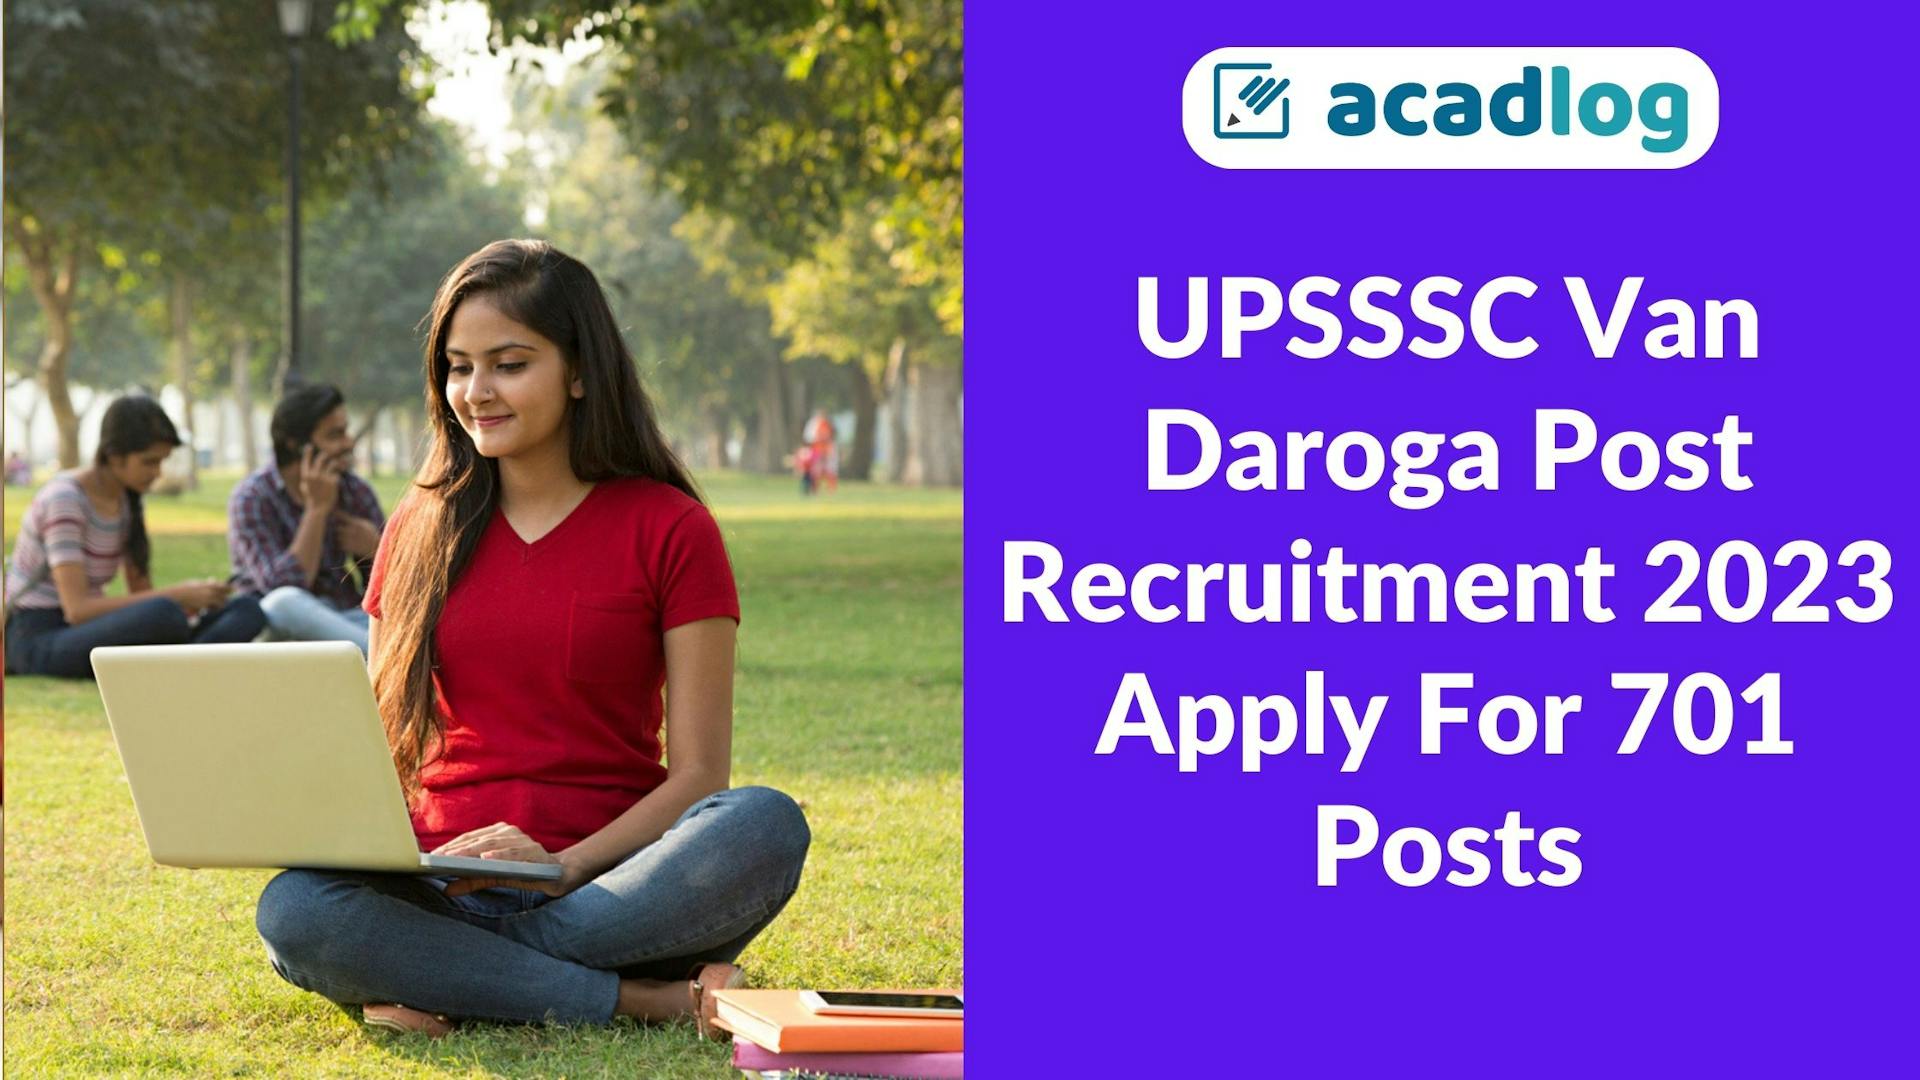 UPSSSC Van Daroga Post Recruitment 2023: Apply For 701 Posts